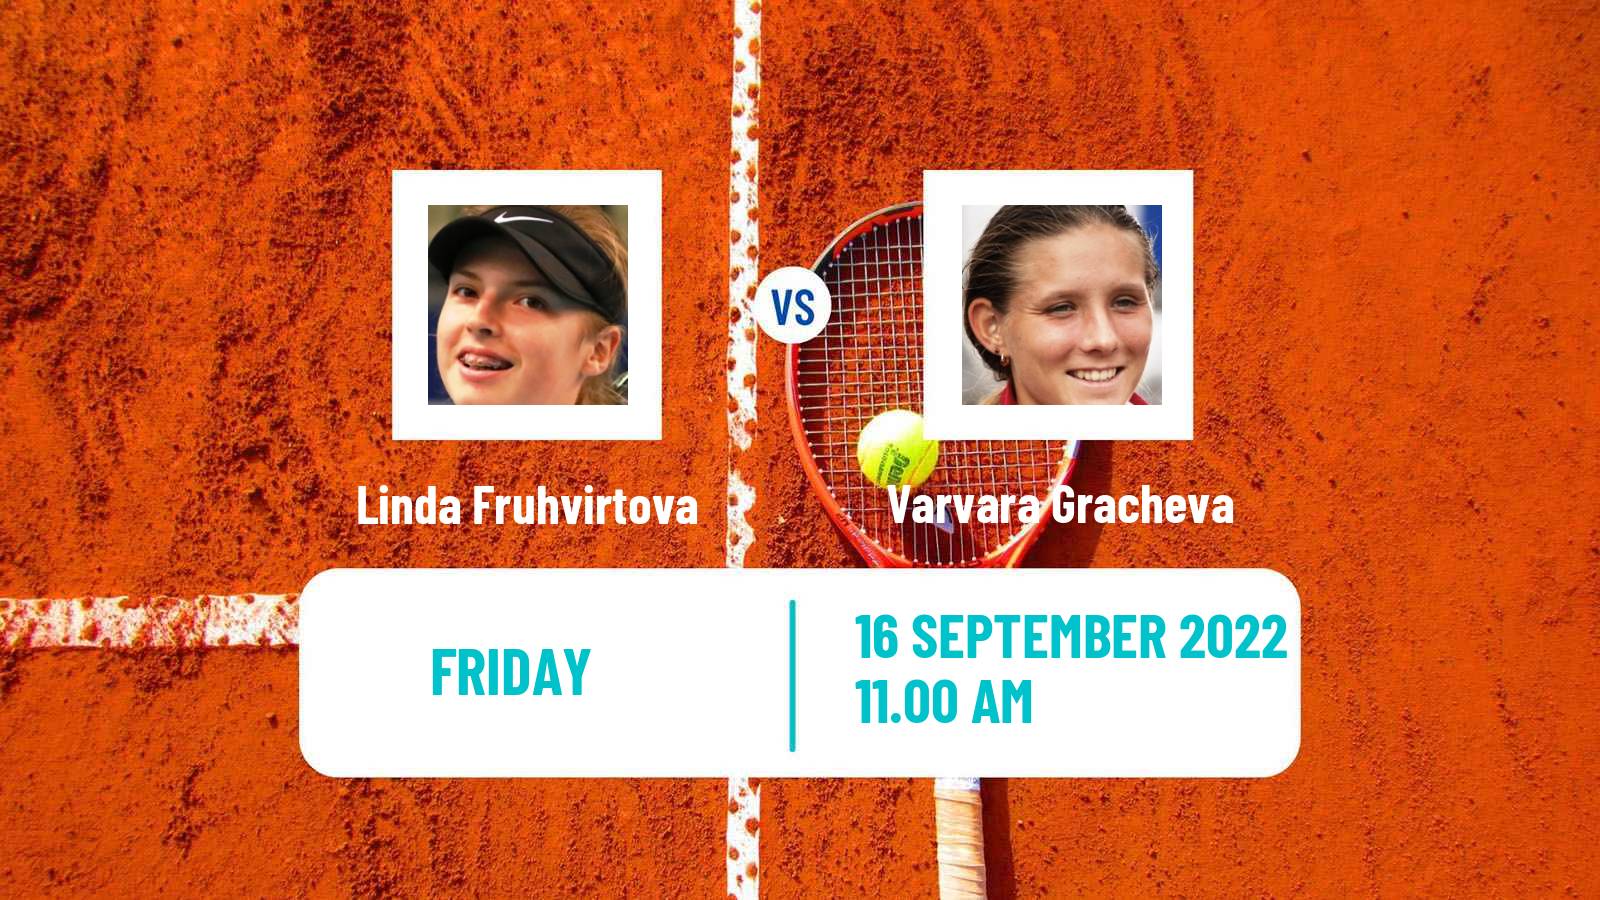 Tennis WTA Chennai Linda Fruhvirtova - Varvara Gracheva